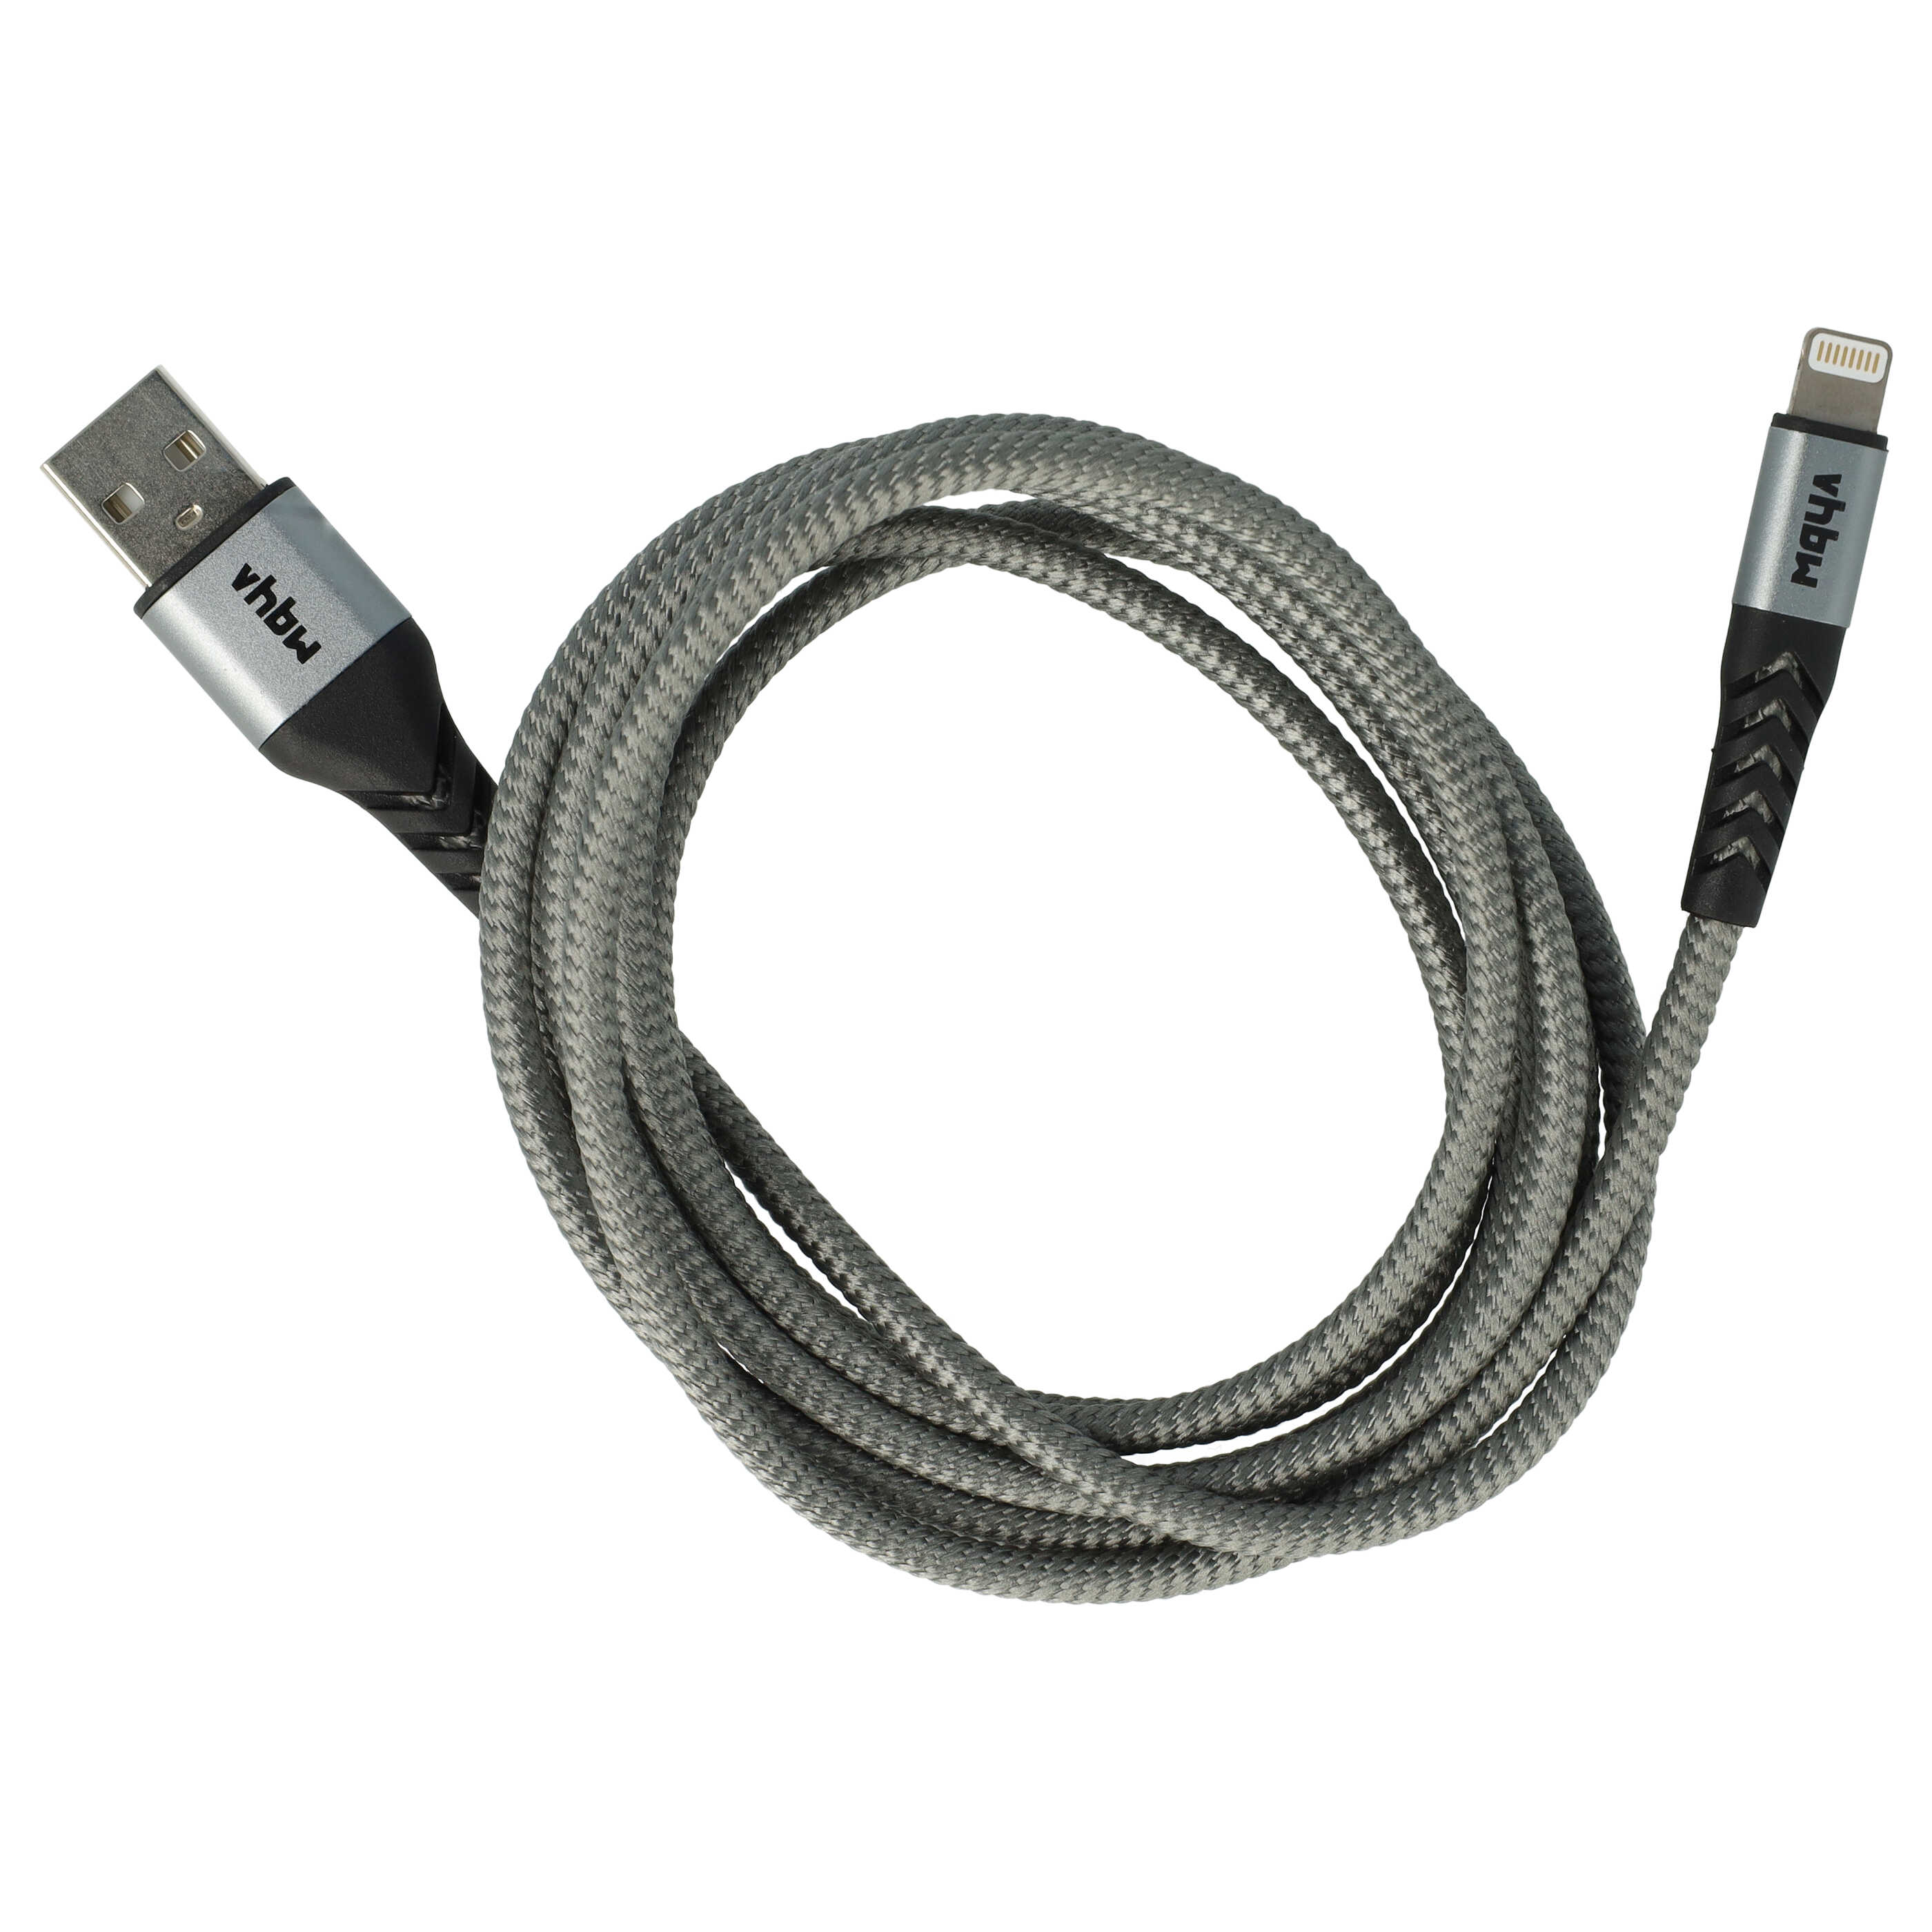 Cavo lightning - USB A per dispositivi Apple iOS Apple AirPods - nero / grigio, 180cm